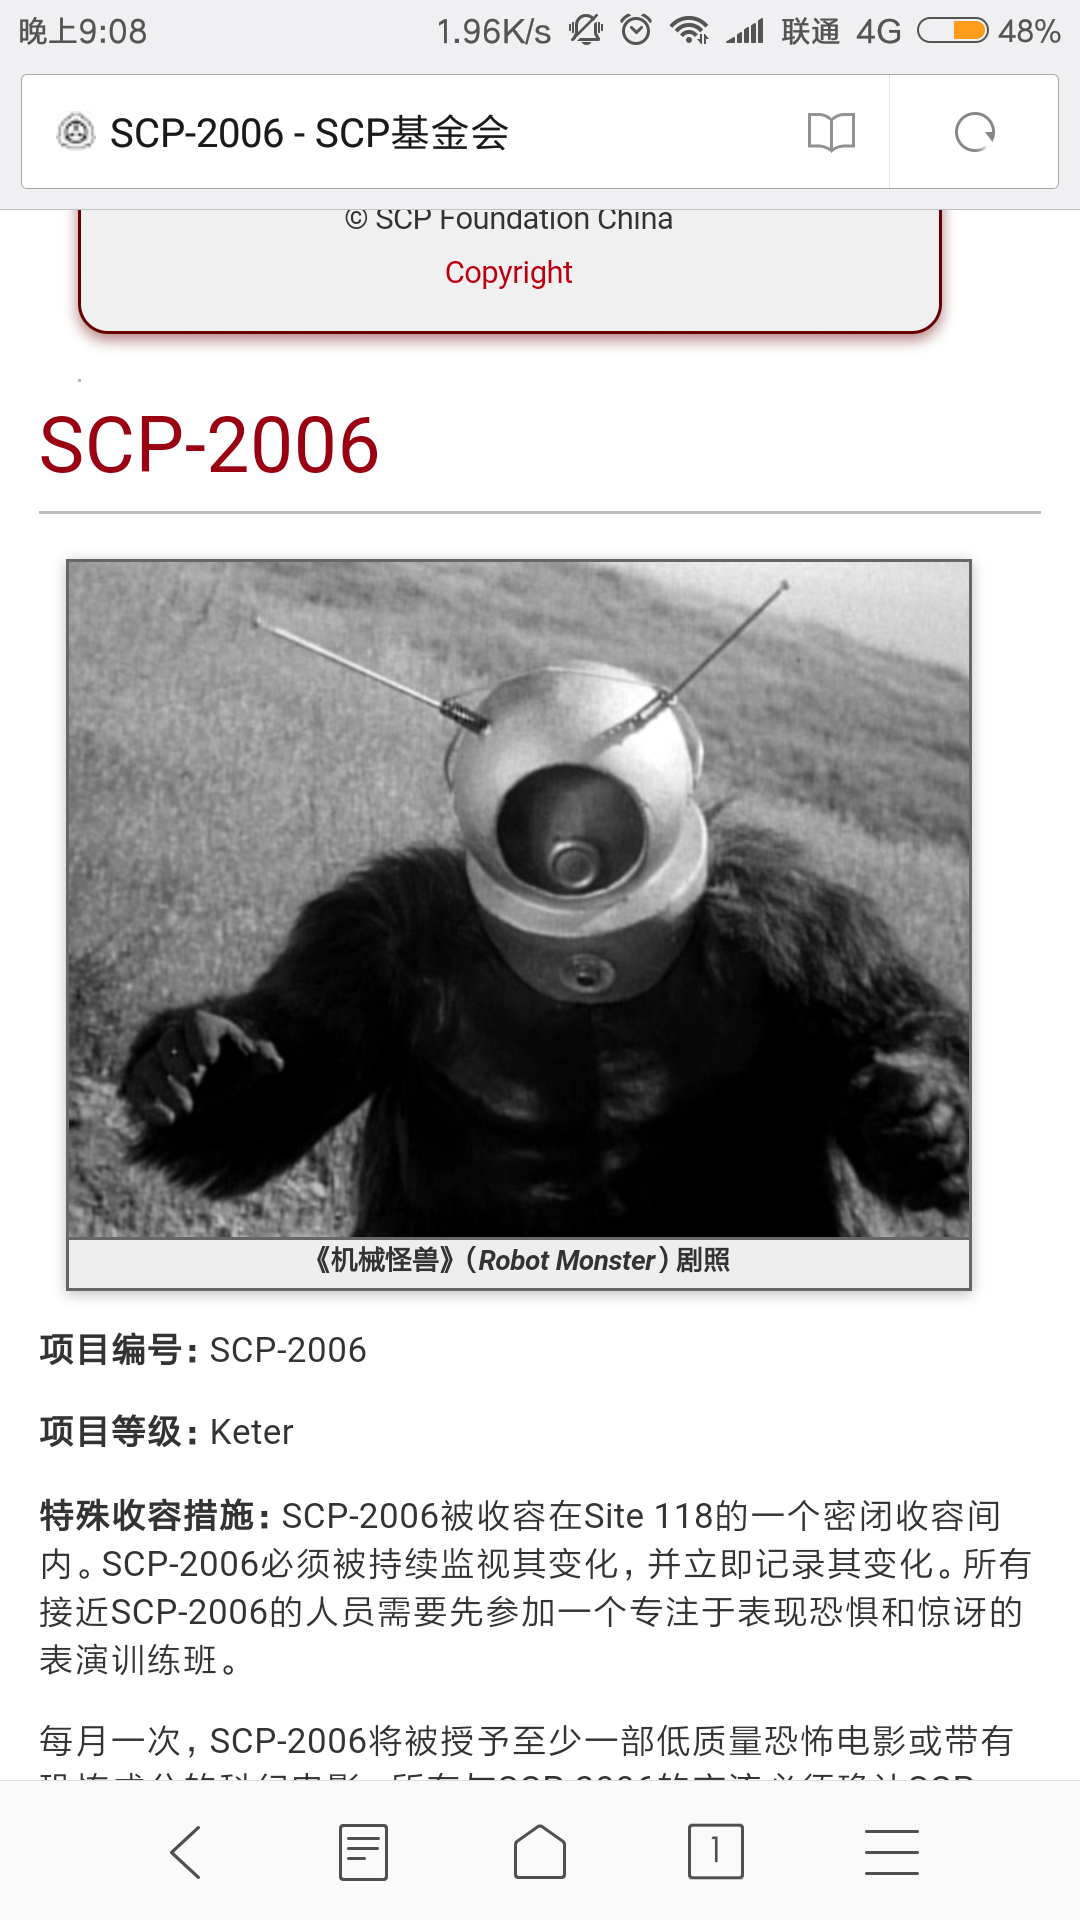 scp2006太吓人啦(转自scp基金会官网)